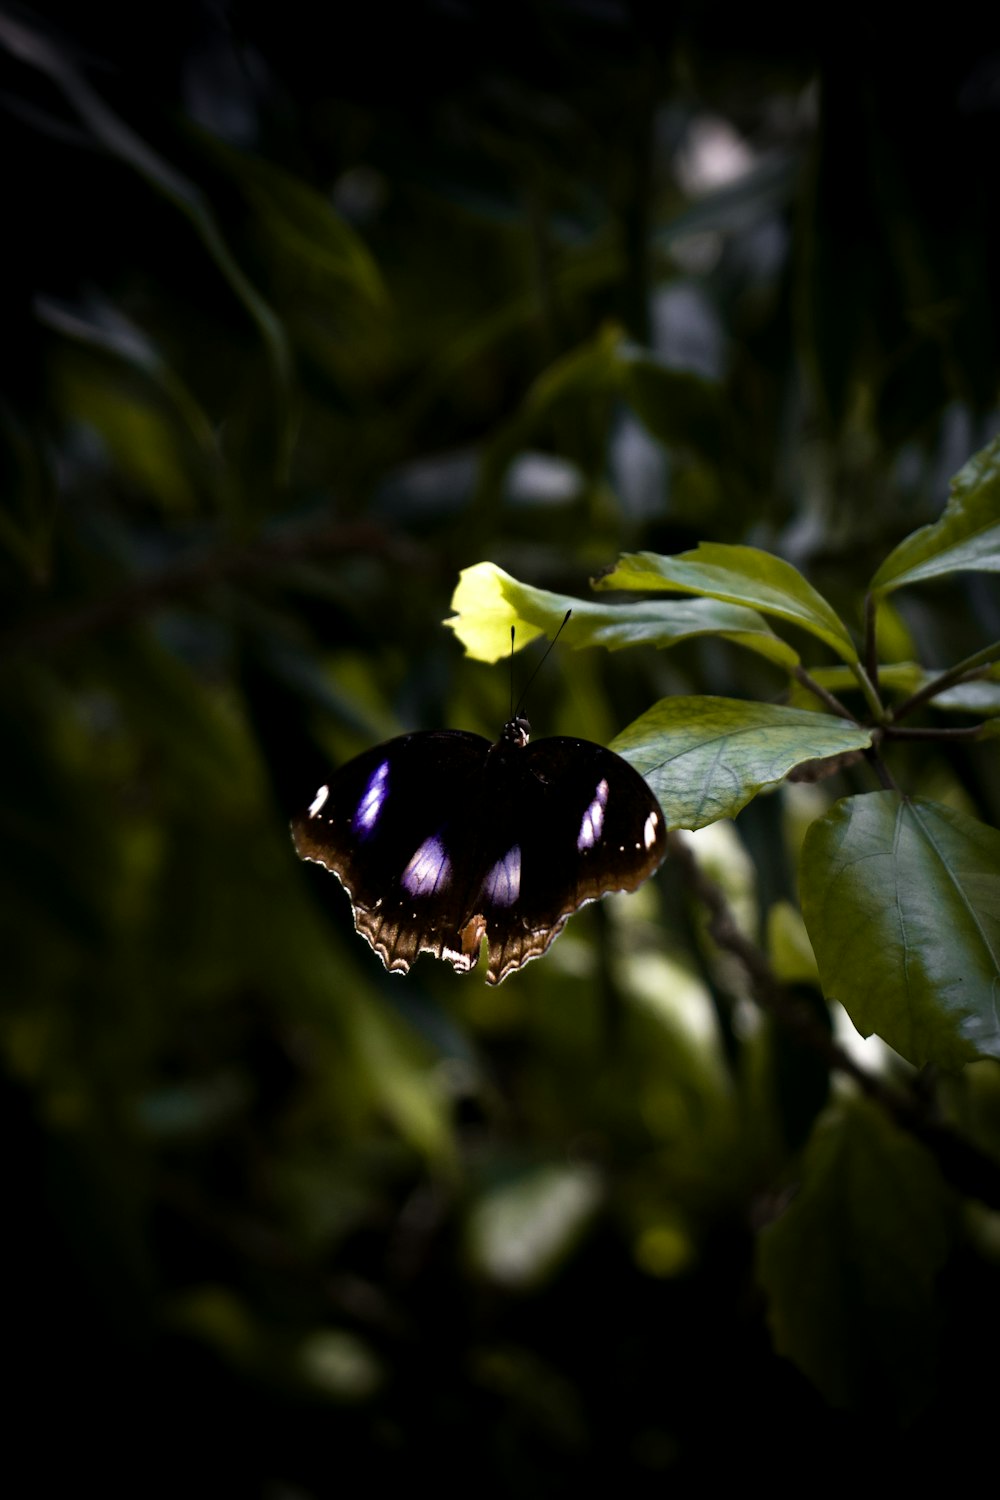 Una mariposa sentada encima de una hoja verde